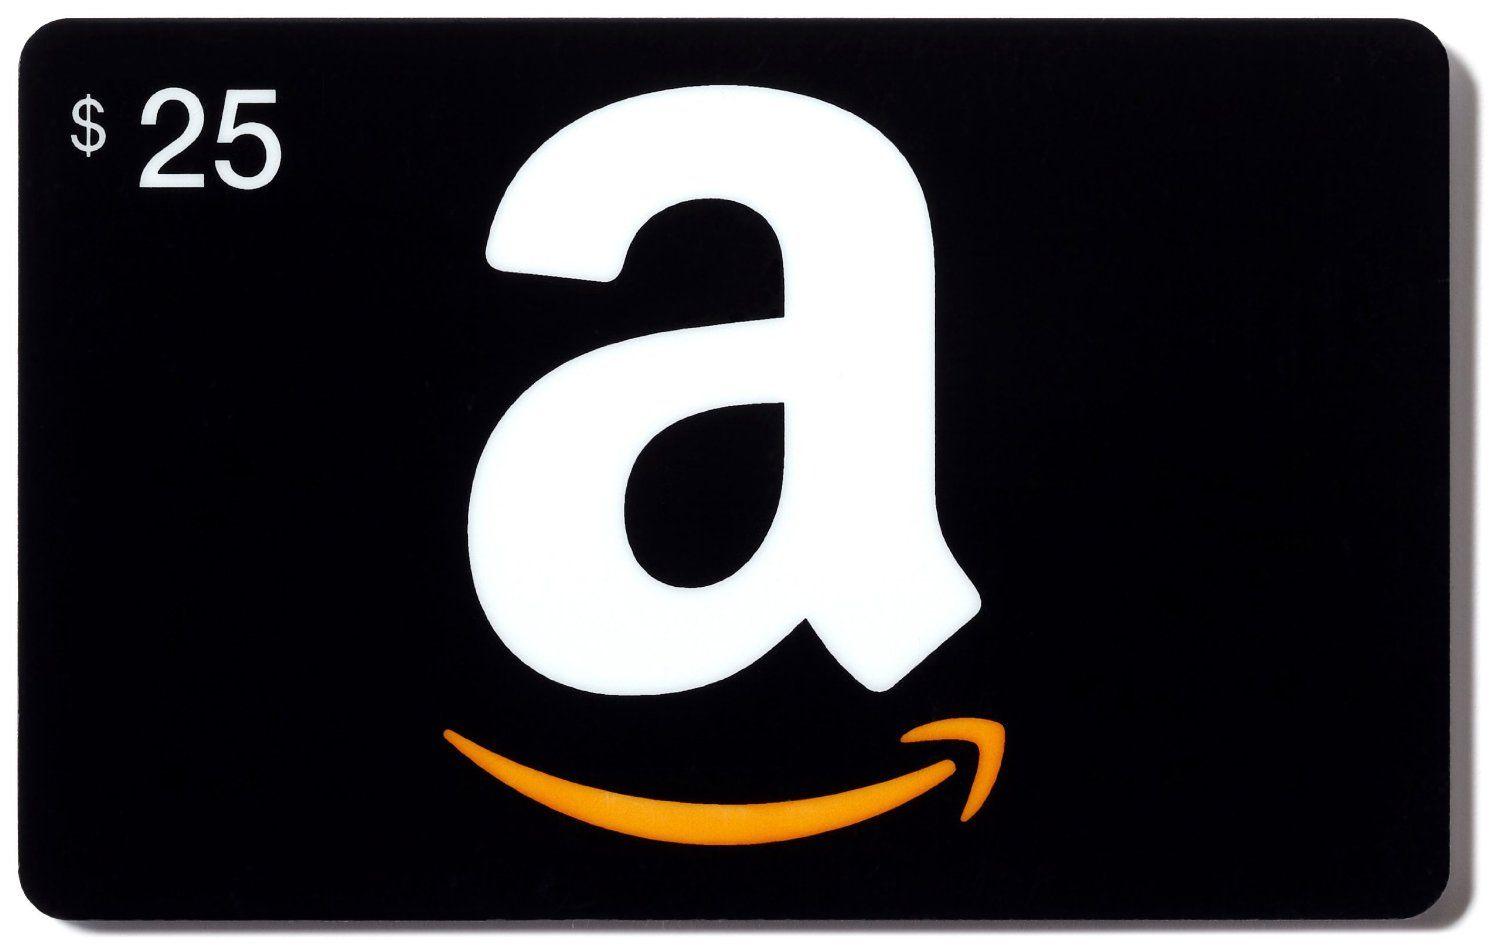 بطاقة هدايا أمازون Amazon US $ 25 للستور الأمريكي